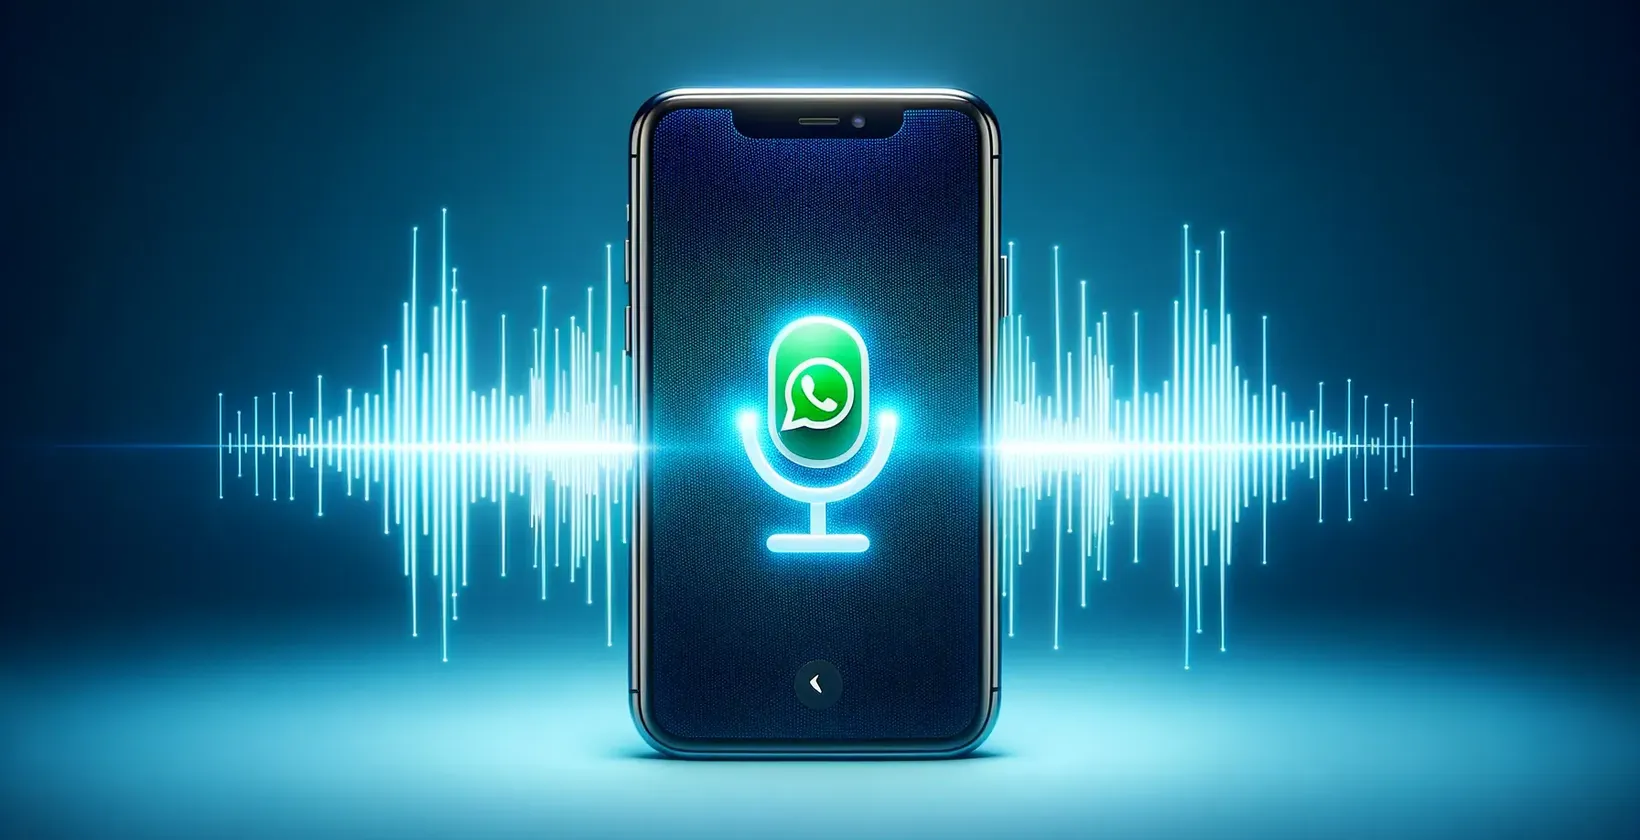 Hình ảnh đại diện cho khái niệm WhatsApp cuộc gọi thoại với chức năng đọc chính tả